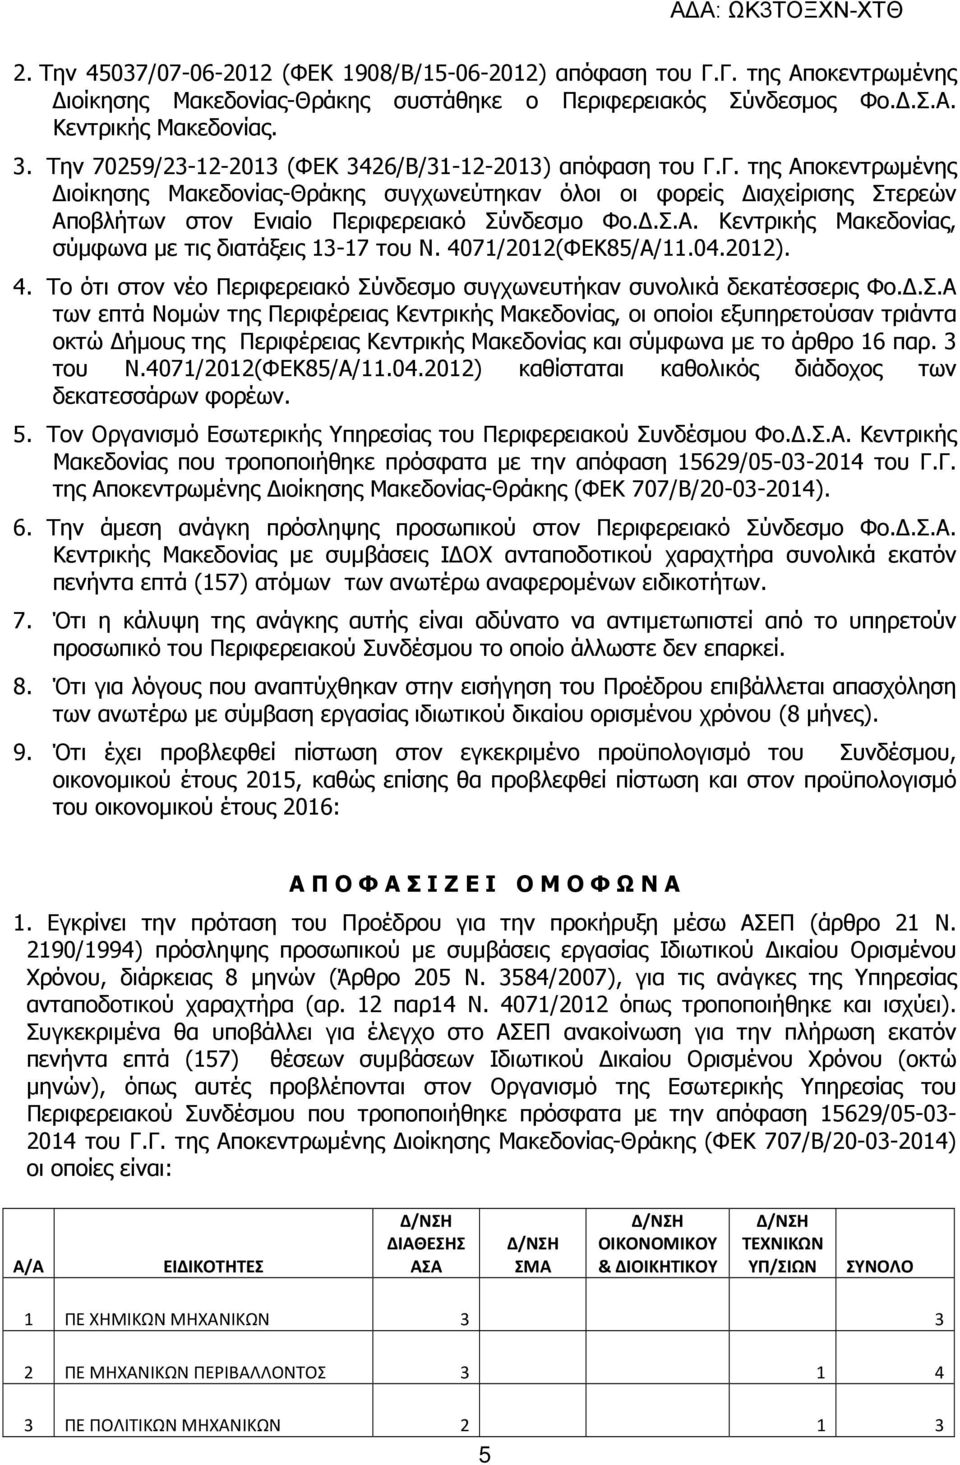 Γ. της Αποκεντρωµένης ιοίκησης Μακεδονίας-Θράκης συγχωνεύτηκαν όλοι οι φορείς ιαχείρισης Στερεών Αποβλήτων στον Ενιαίο Περιφερειακό Σύνδεσµο Φο..Σ.Α. Κεντρικής Μακεδονίας, σύµφωνα µε τις διατάξεις 13-17 του Ν.